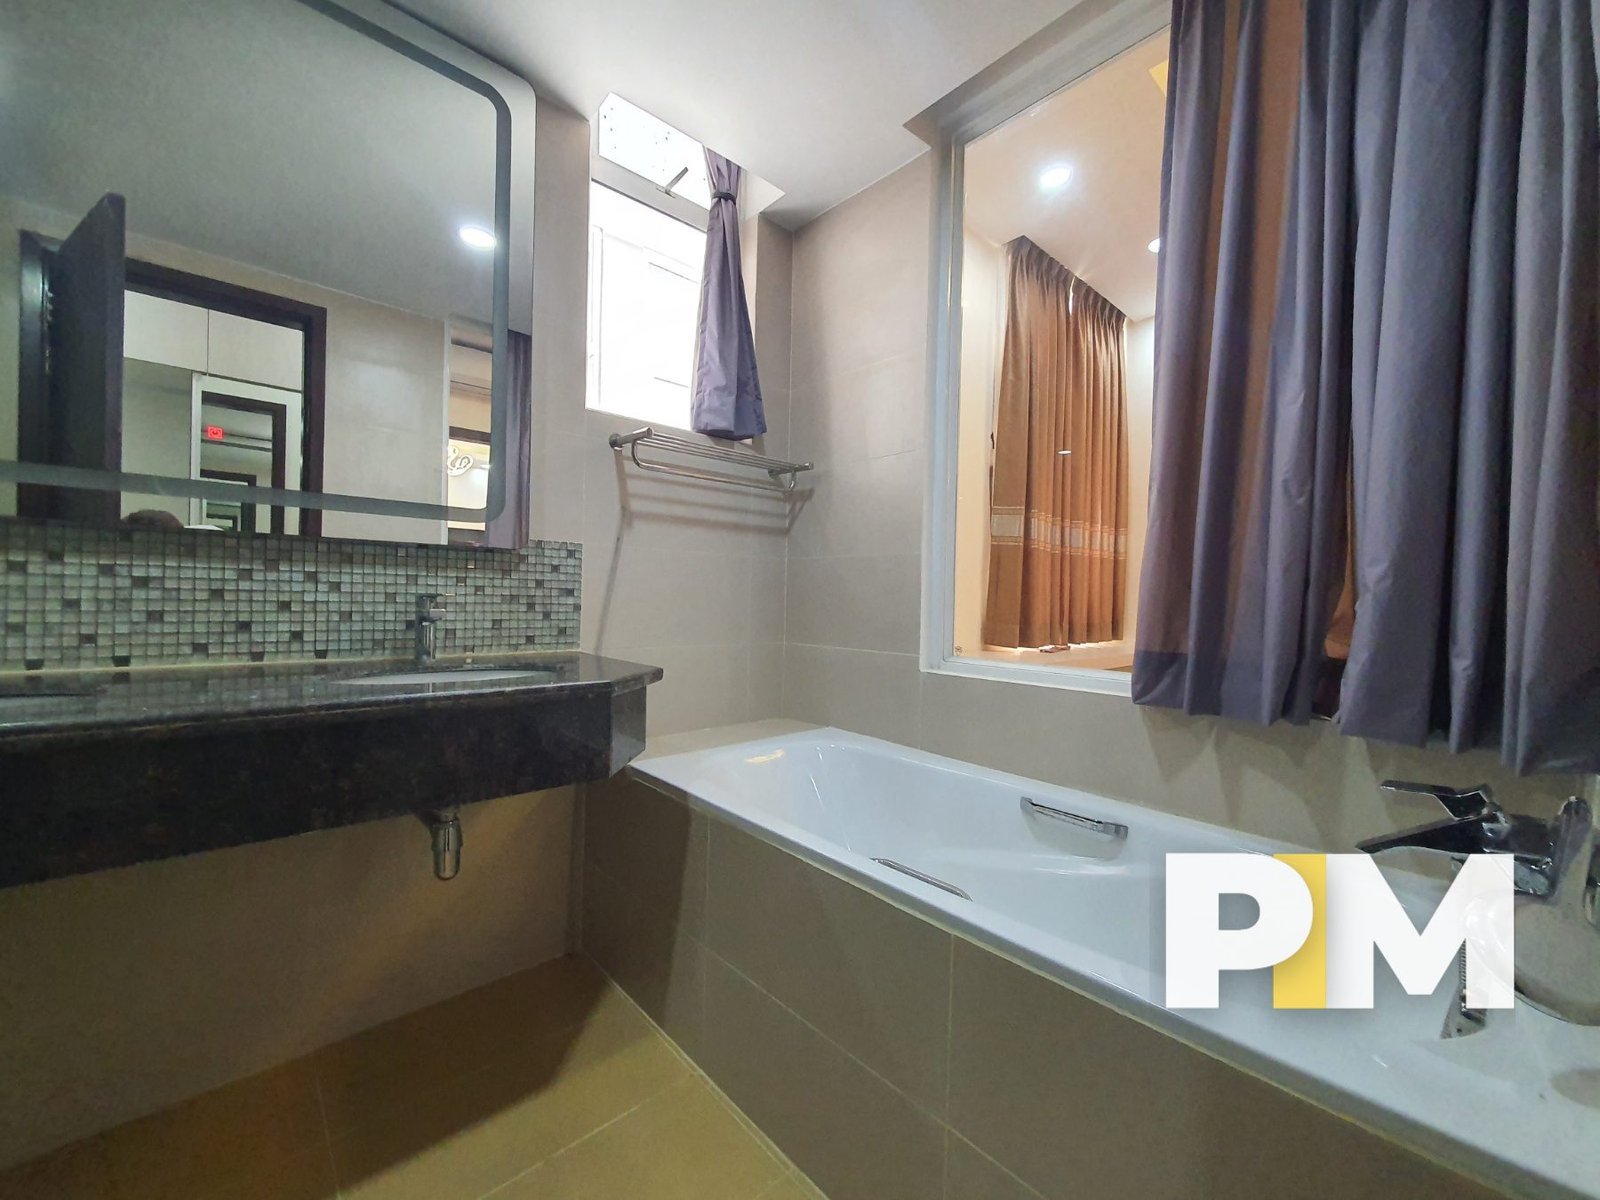 Bathroom with bath tub - Myanmar Real Estate